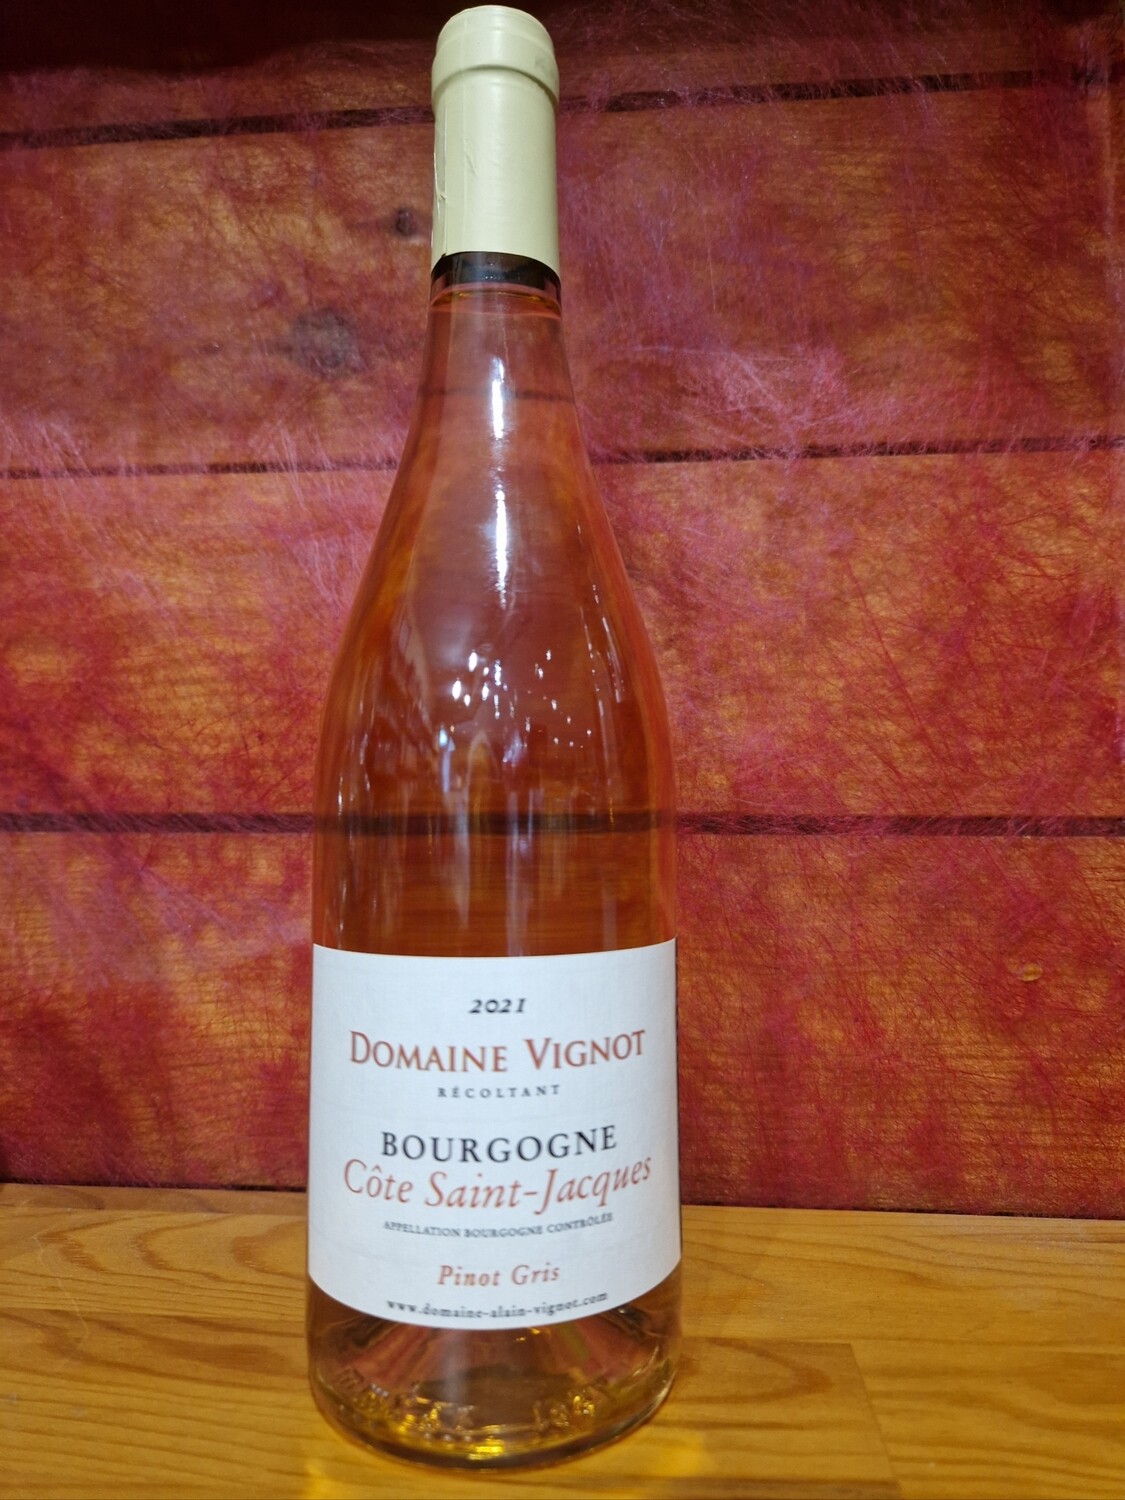 Bourgogne Côte Saint Jacques pinot gris 2022 domaine Vignot